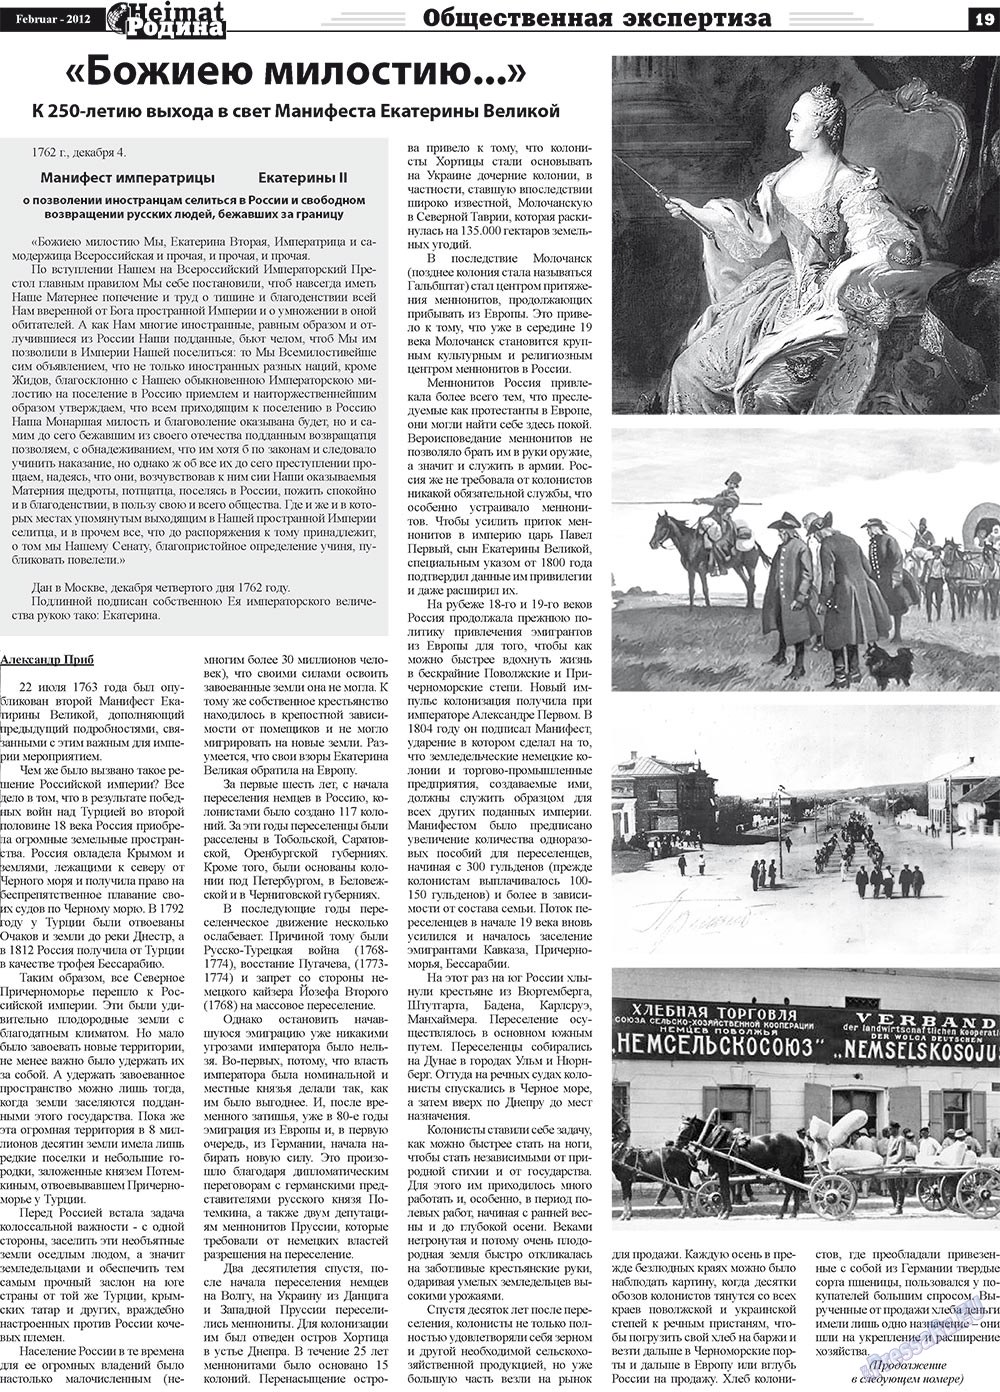 Heimat-Родина (газета). 2012 год, номер 2, стр. 19